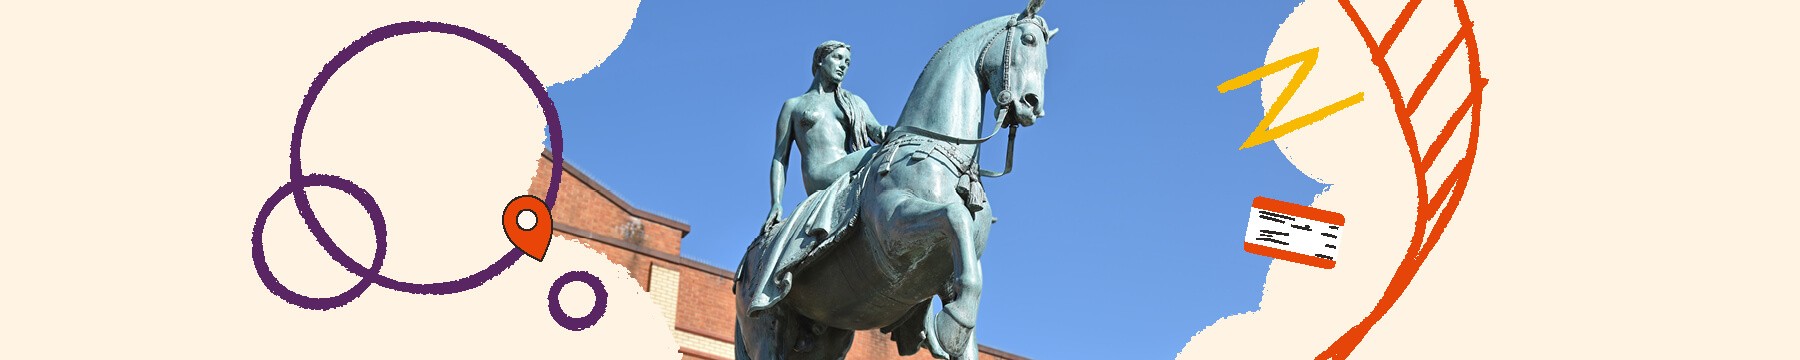 Lady Godiva Statue in Coventry